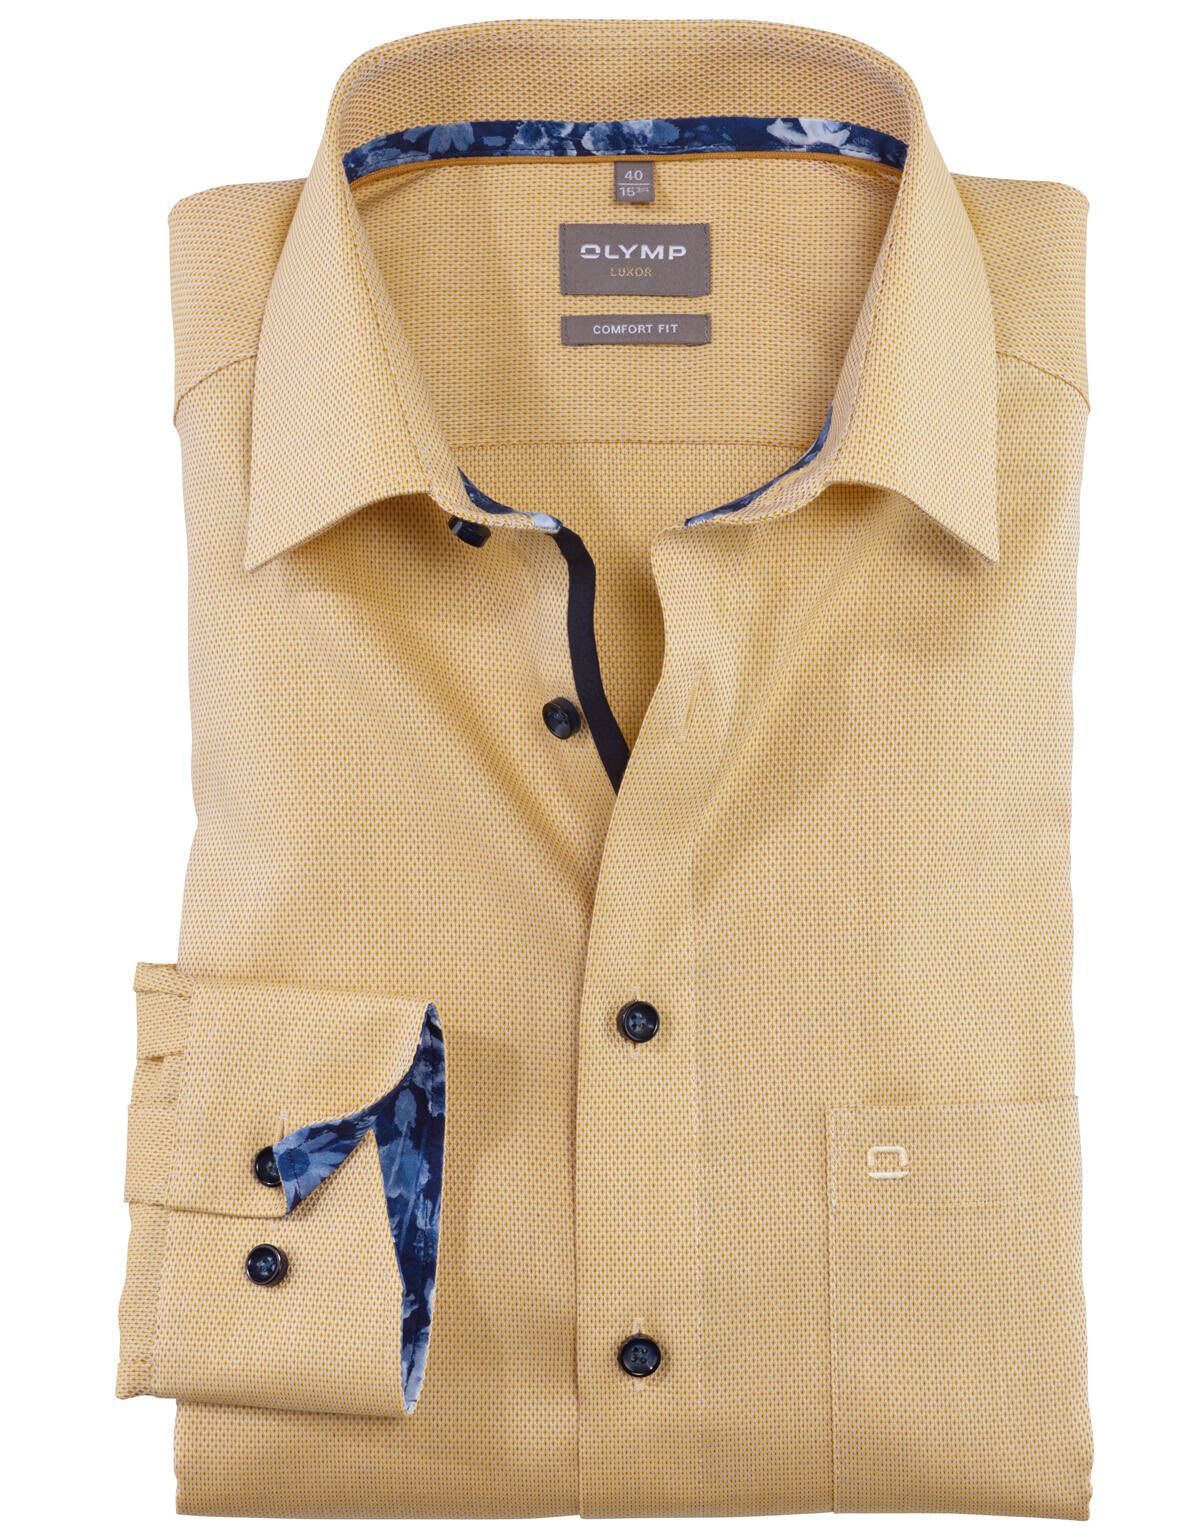 Рубашка классическая мужская OLYMP Luxor, прямая[Желтый]